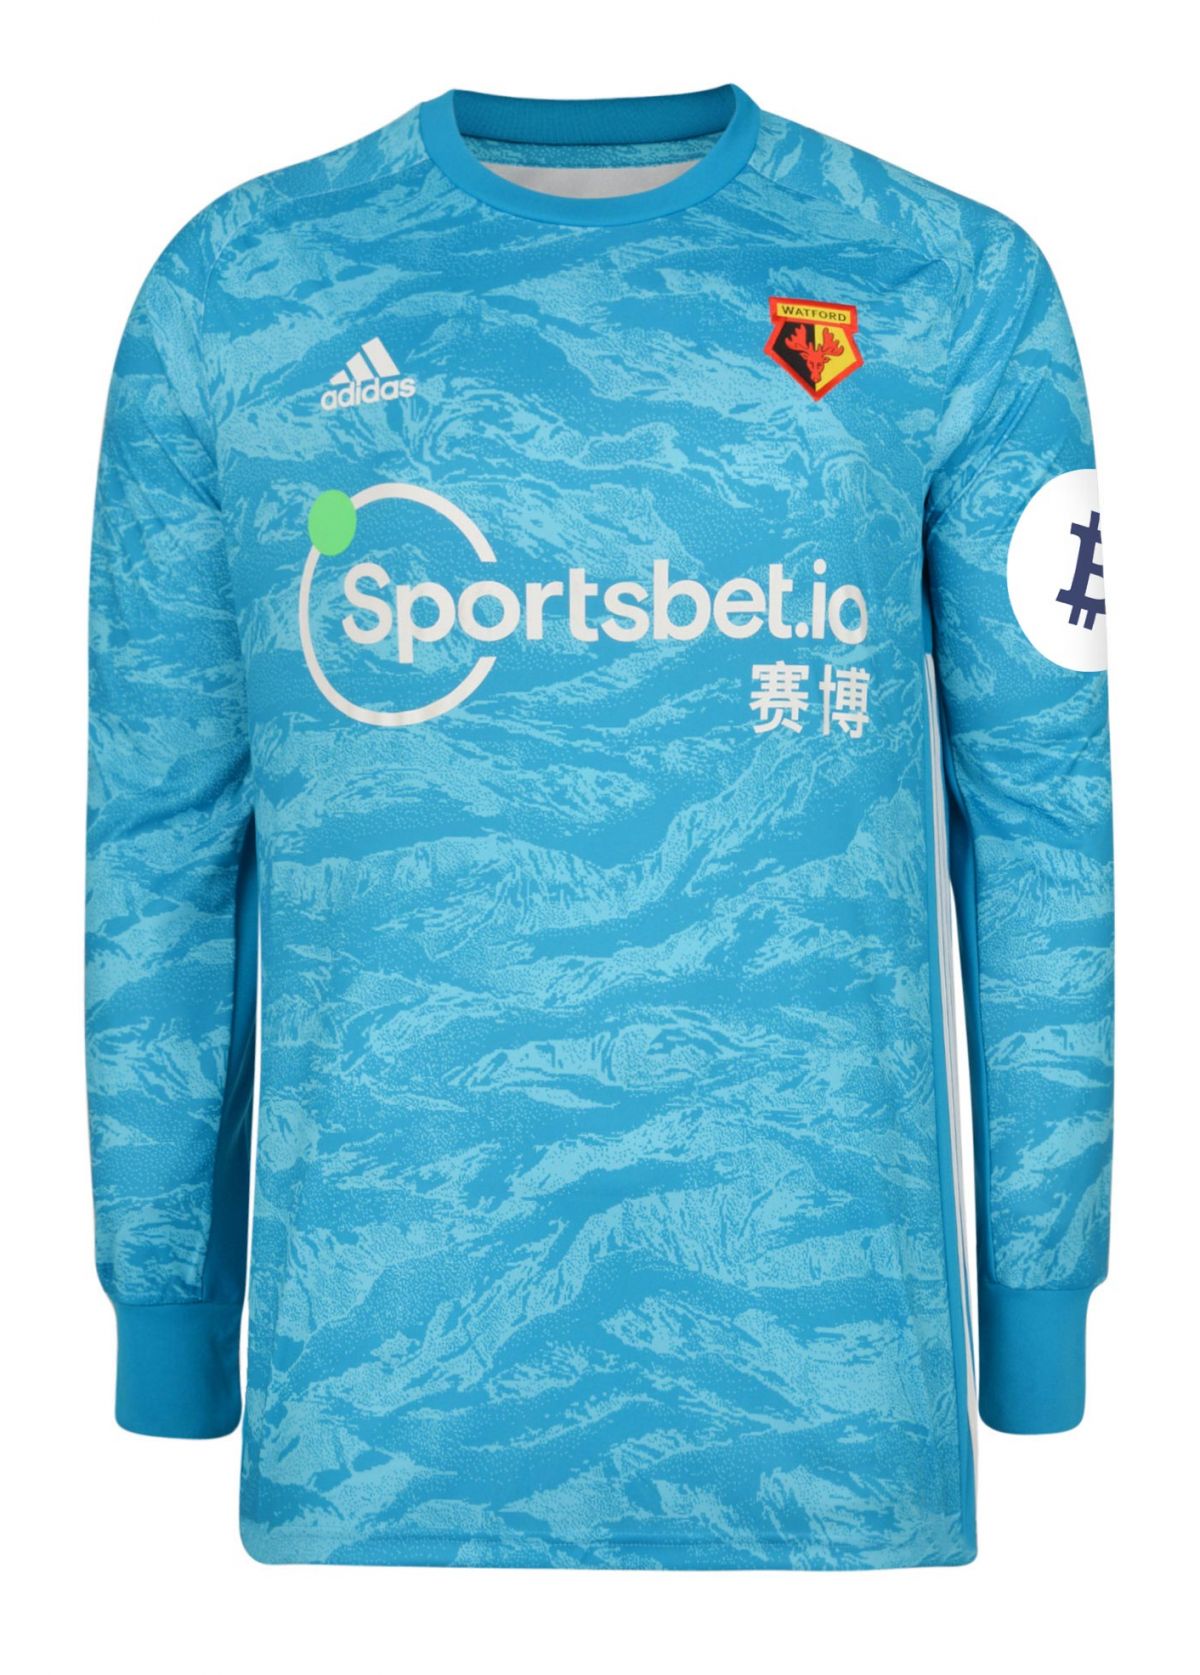 watford goalkeeper kit